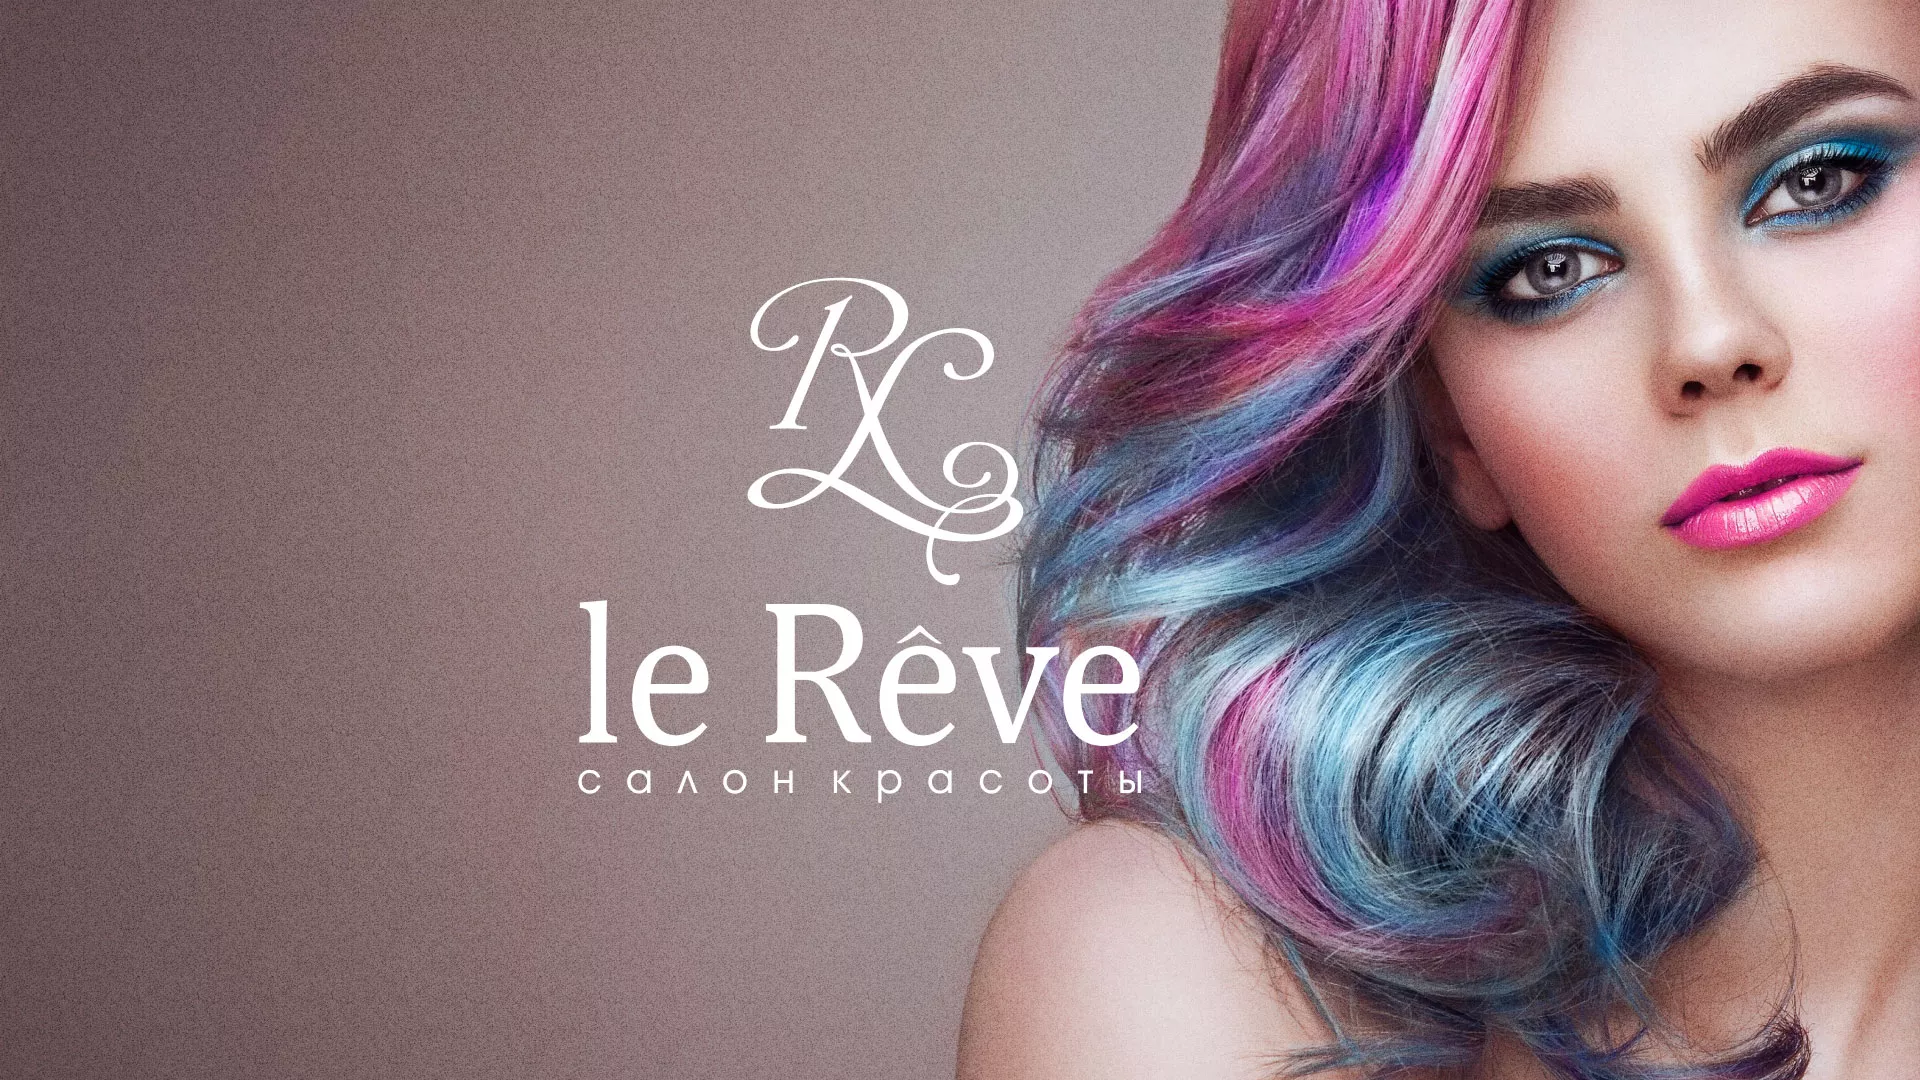 Создание сайта для салона красоты «Le Reve» в Егорьевске